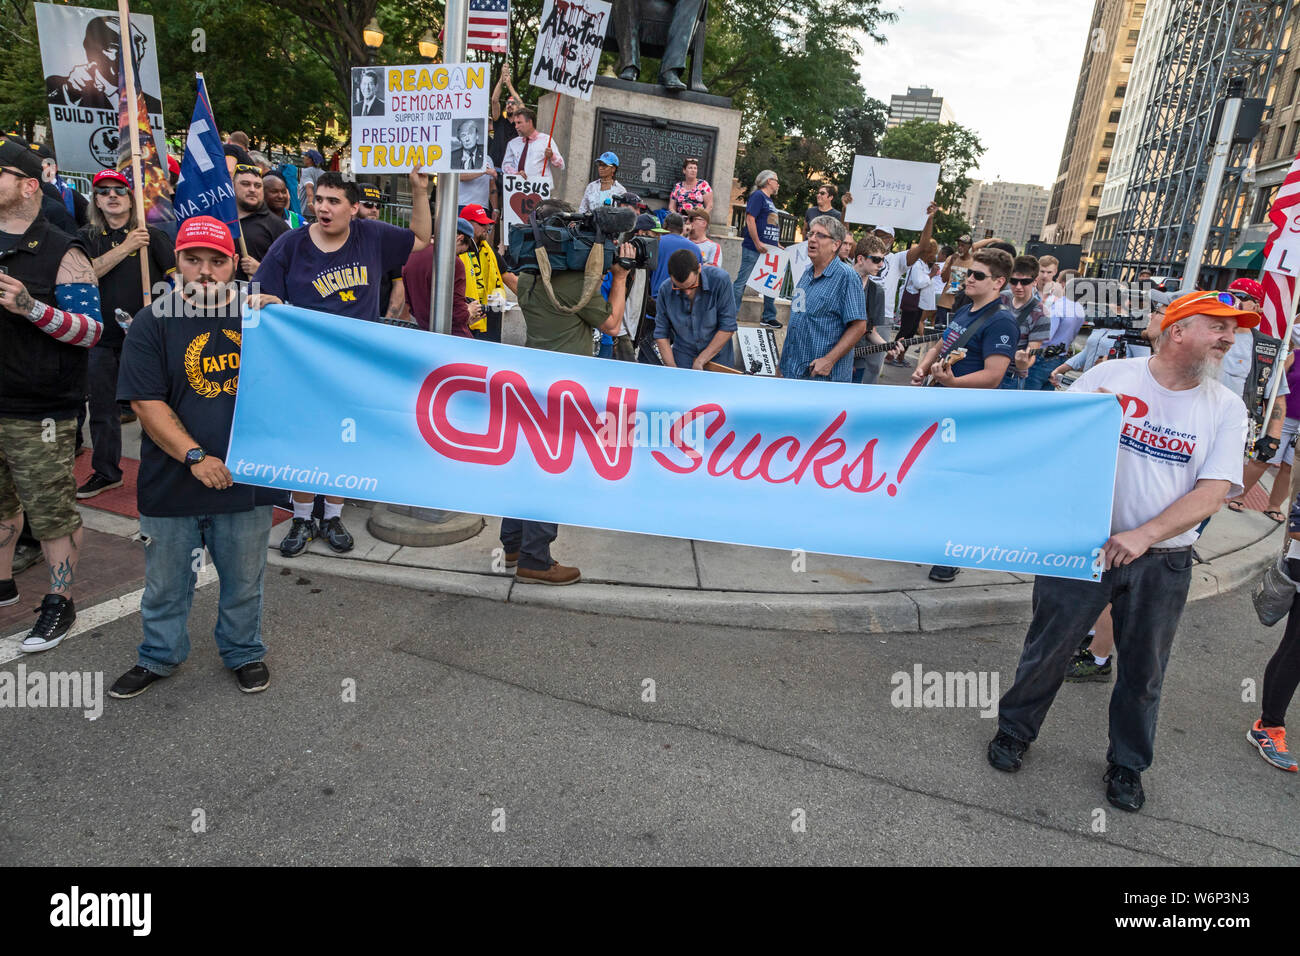 Detroit, Michigan - i sostenitori di Donald Trump si sono stretti al di fuori della prima notte del democratico dibattito presidenziale, che è stato trasmesso dalla CNN. Foto Stock